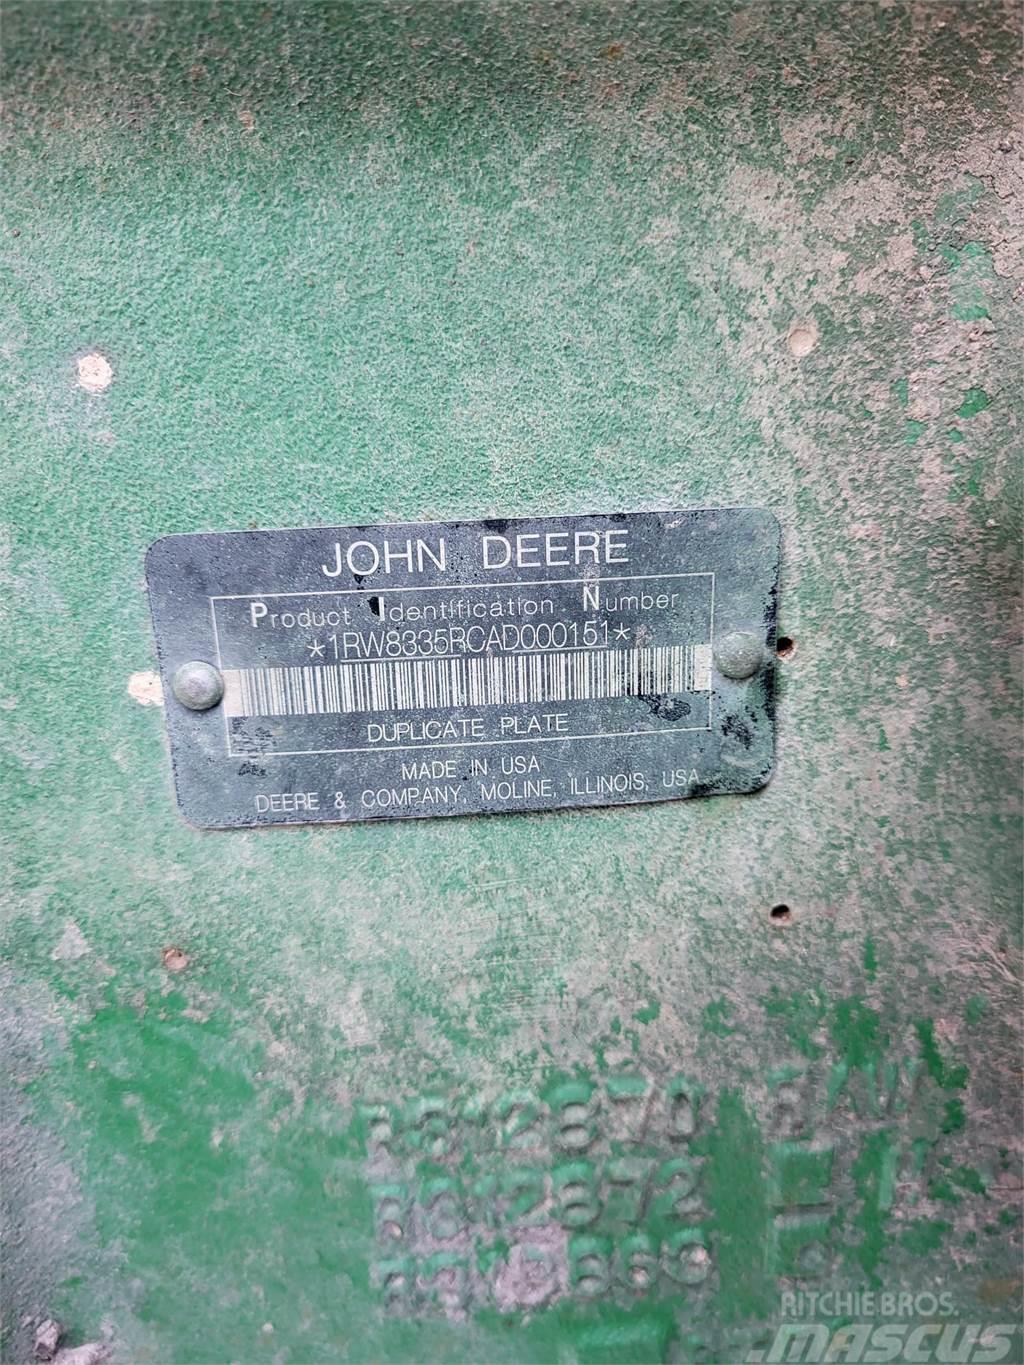 John Deere 8335R Traktorok